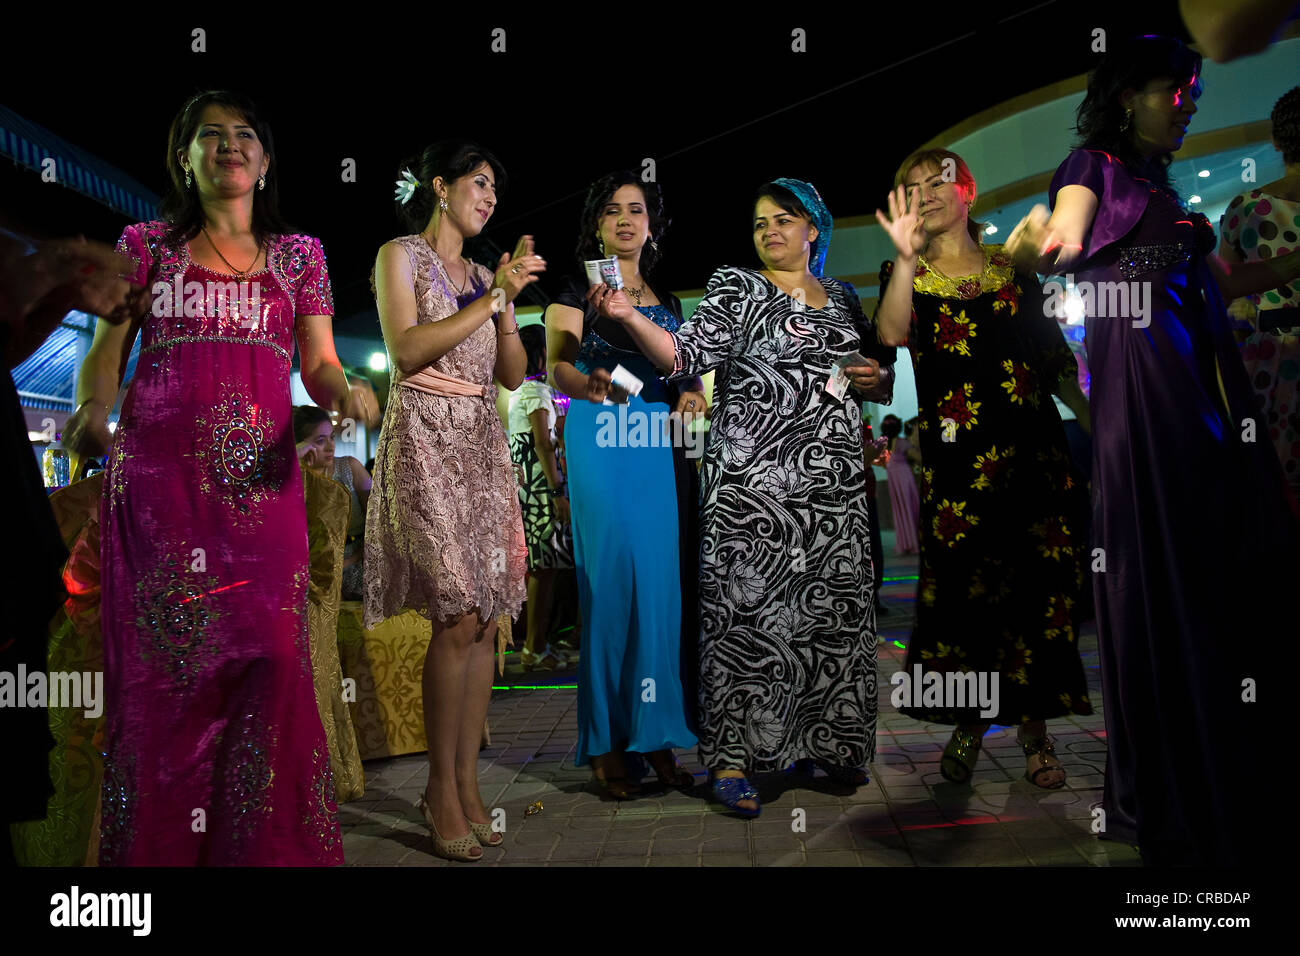 L'Ouzbékistan, Samarkand, fête de mariage, danseurs Banque D'Images